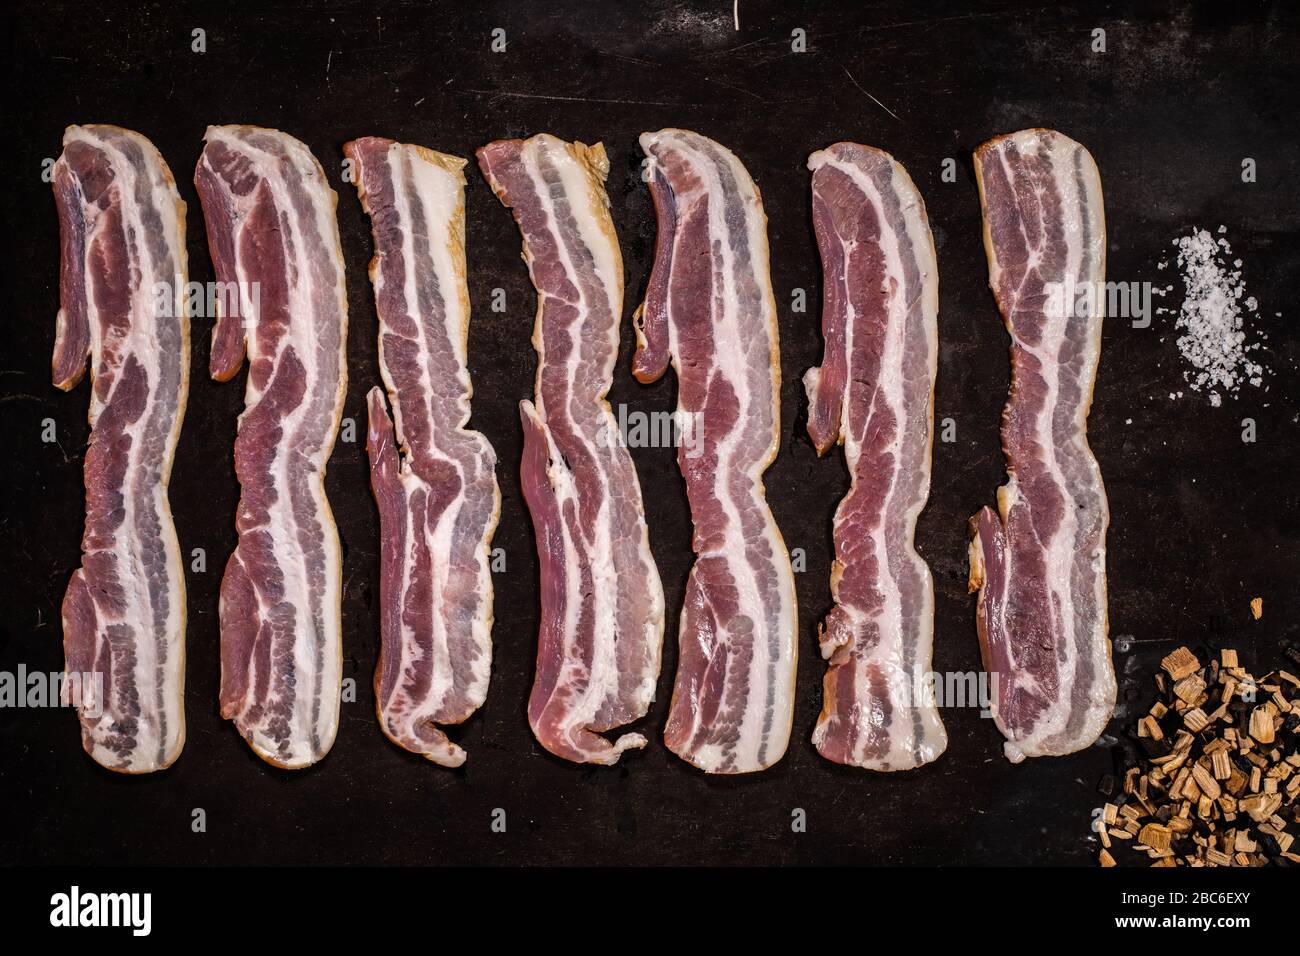 Streaky smoked bacon rashers Stock Photo